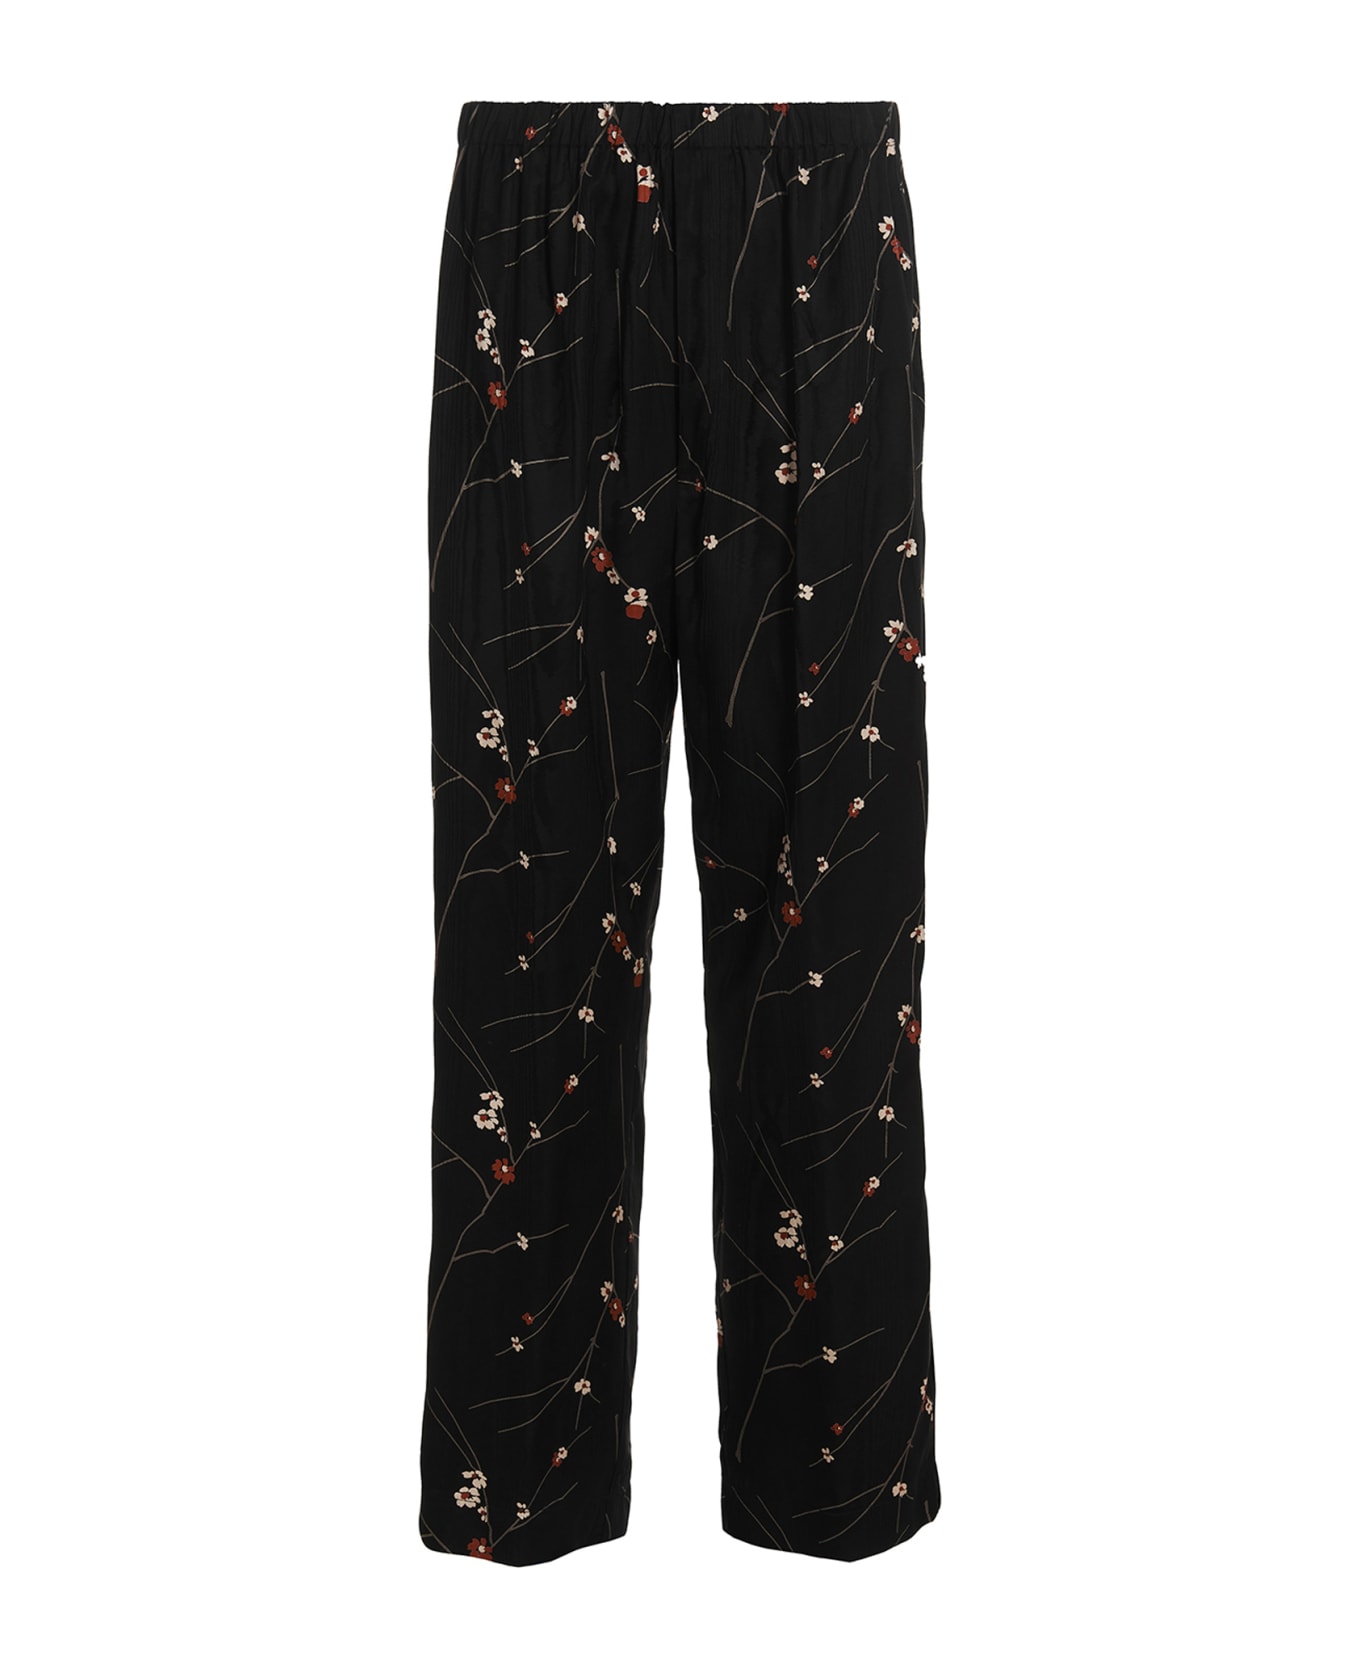 Etro Floral Print Pants - Black  